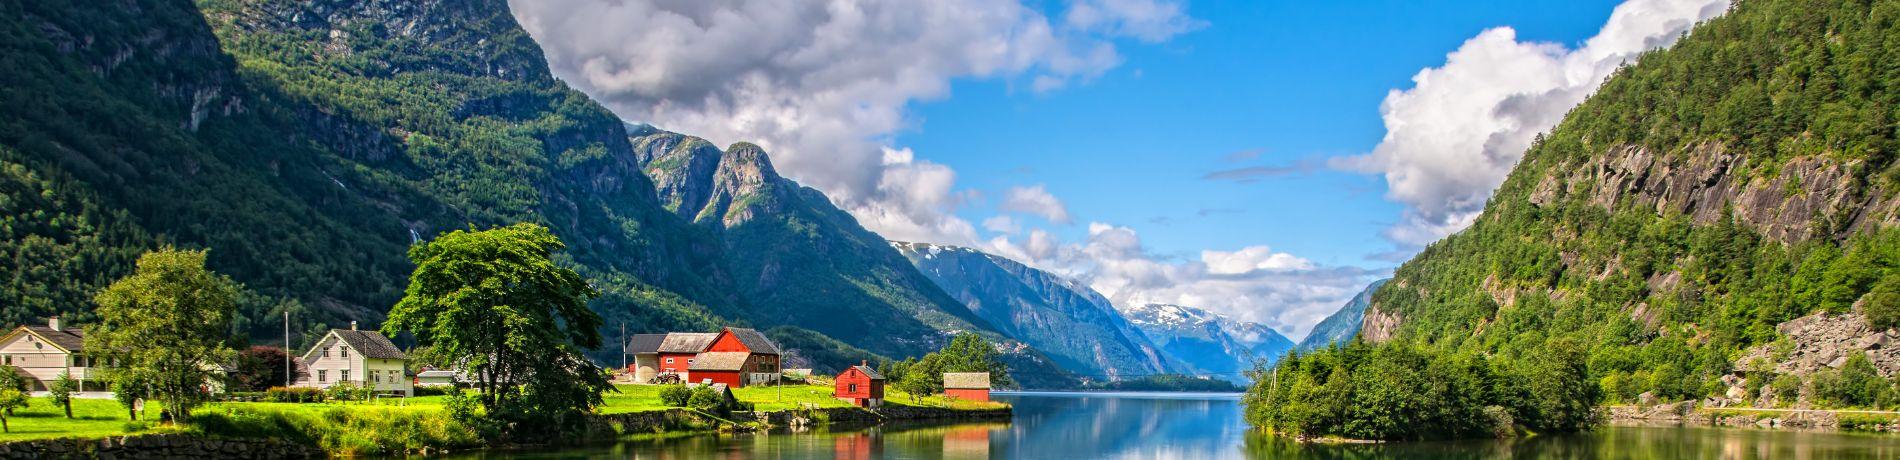 Norvegia | Eden viaggi